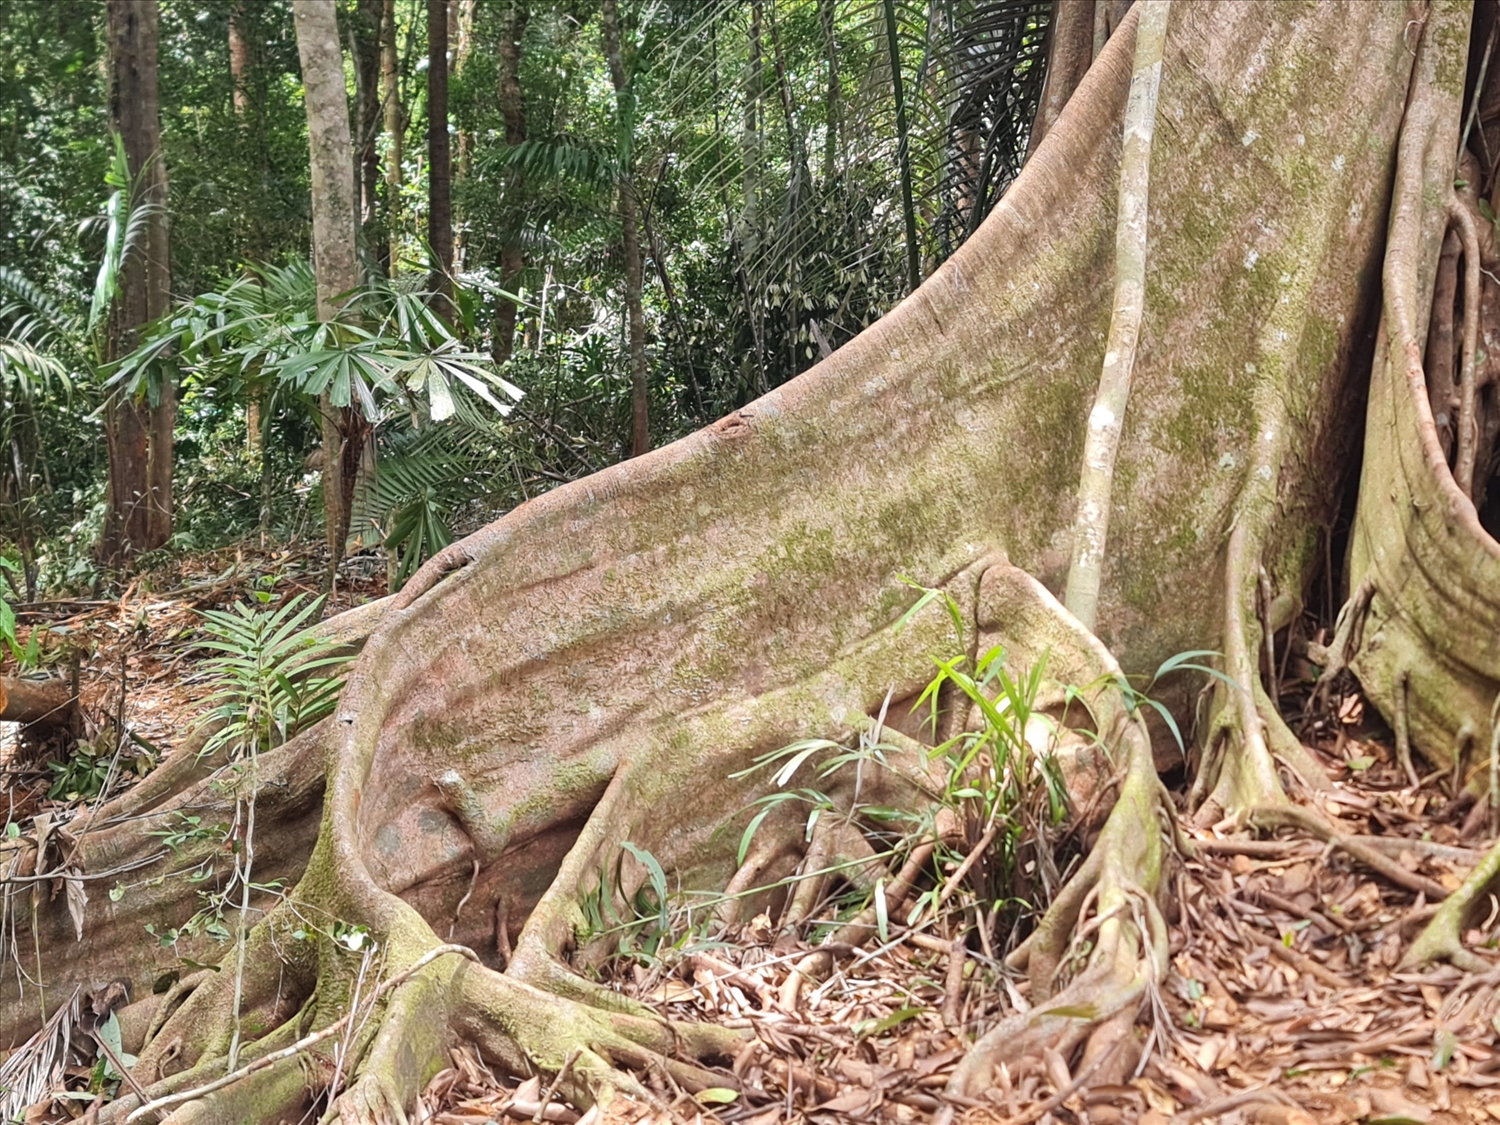 Rễ cây nổi lên mặt đất với những hình thù lạ mắt, độc đáo